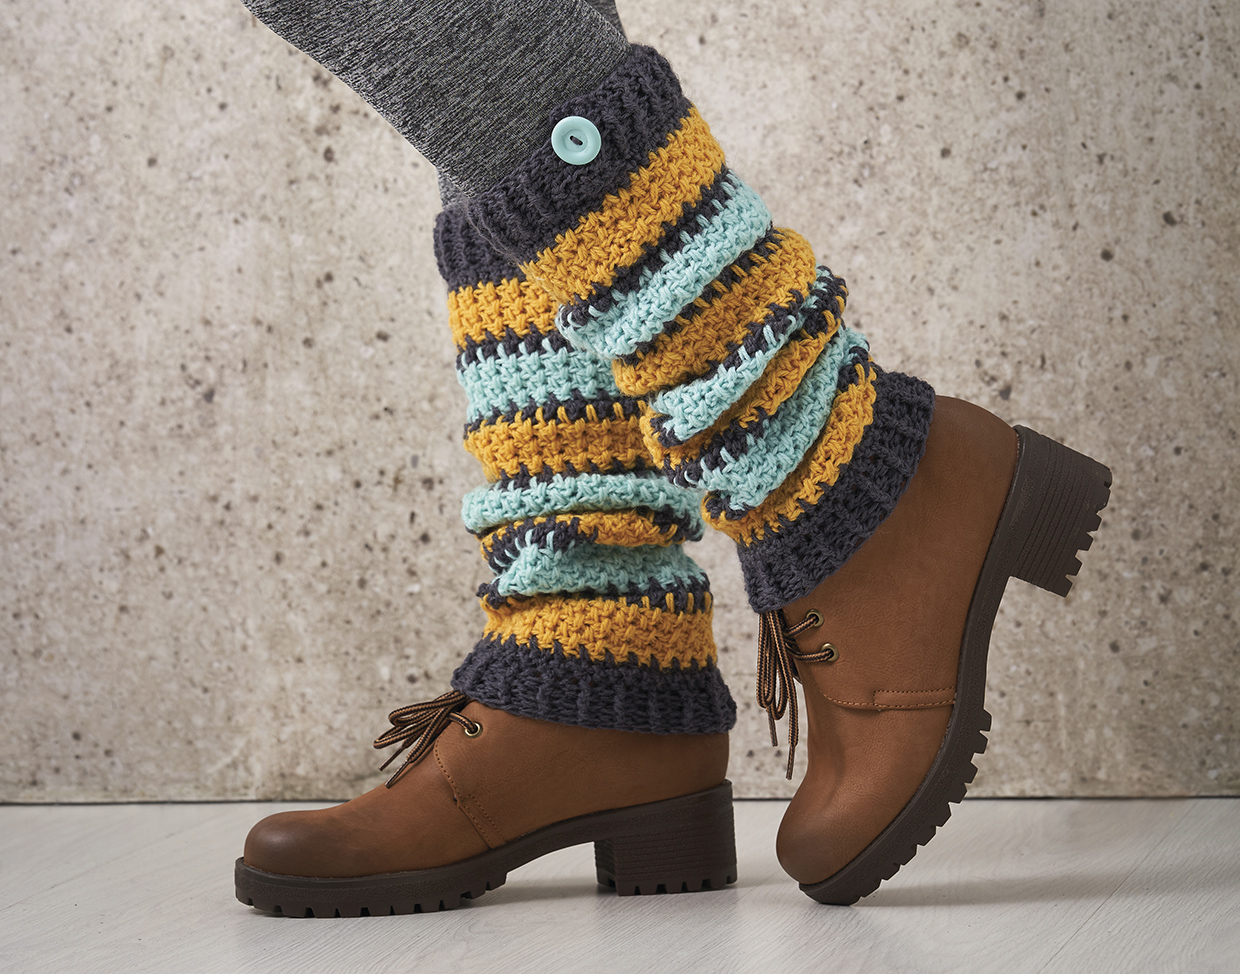 Free crochet leg warmers pattern - Gathered